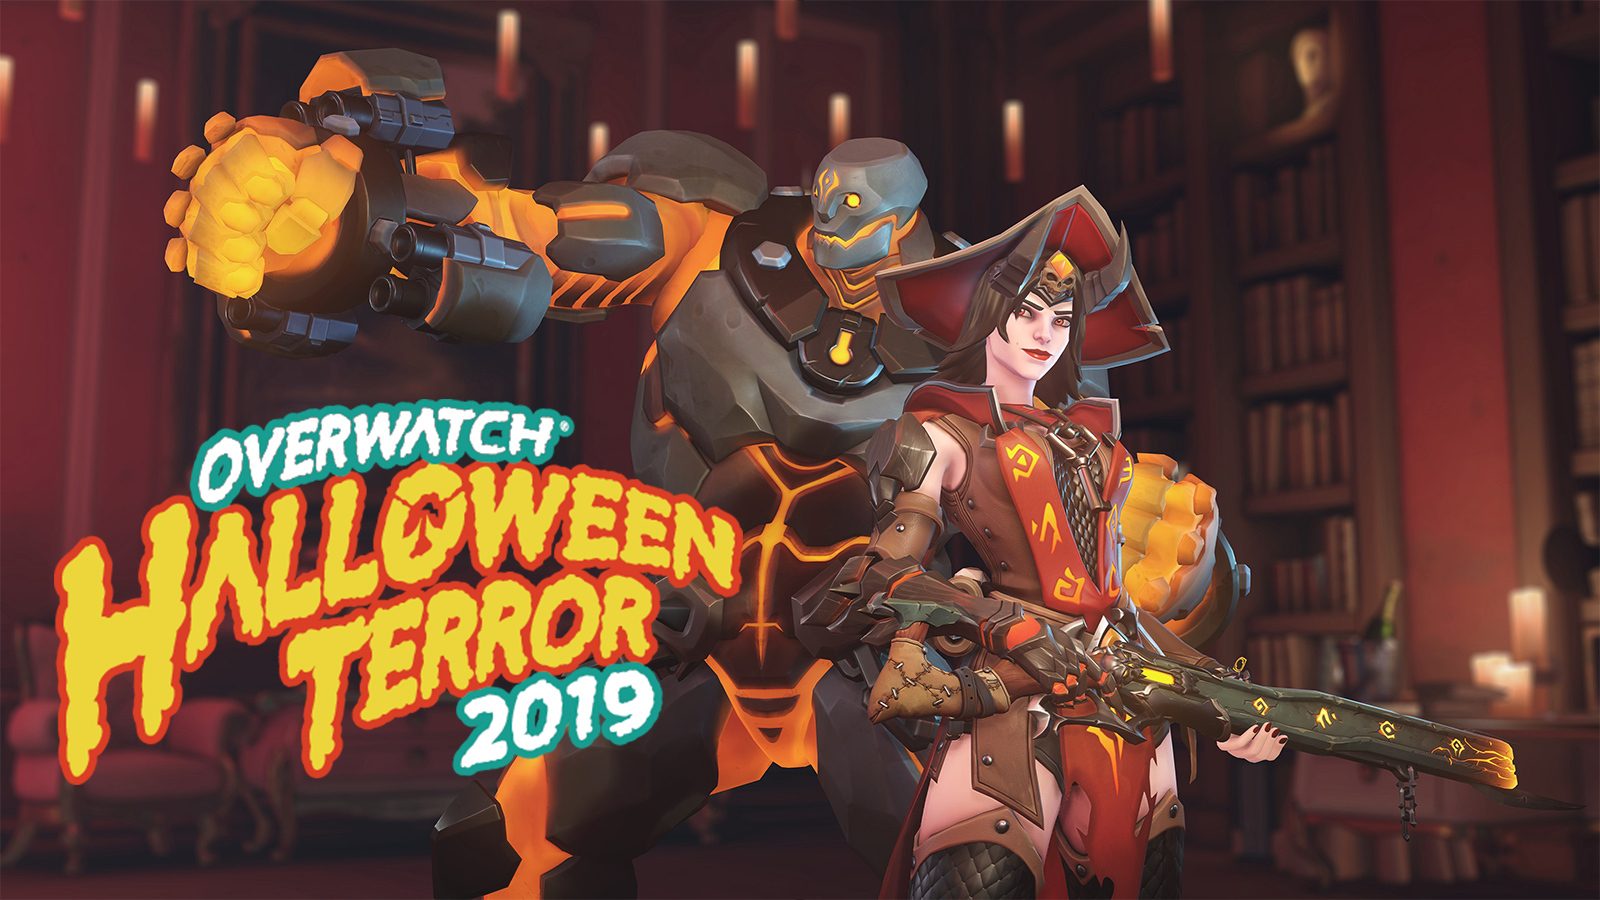 Overwatch halloween terror 2019